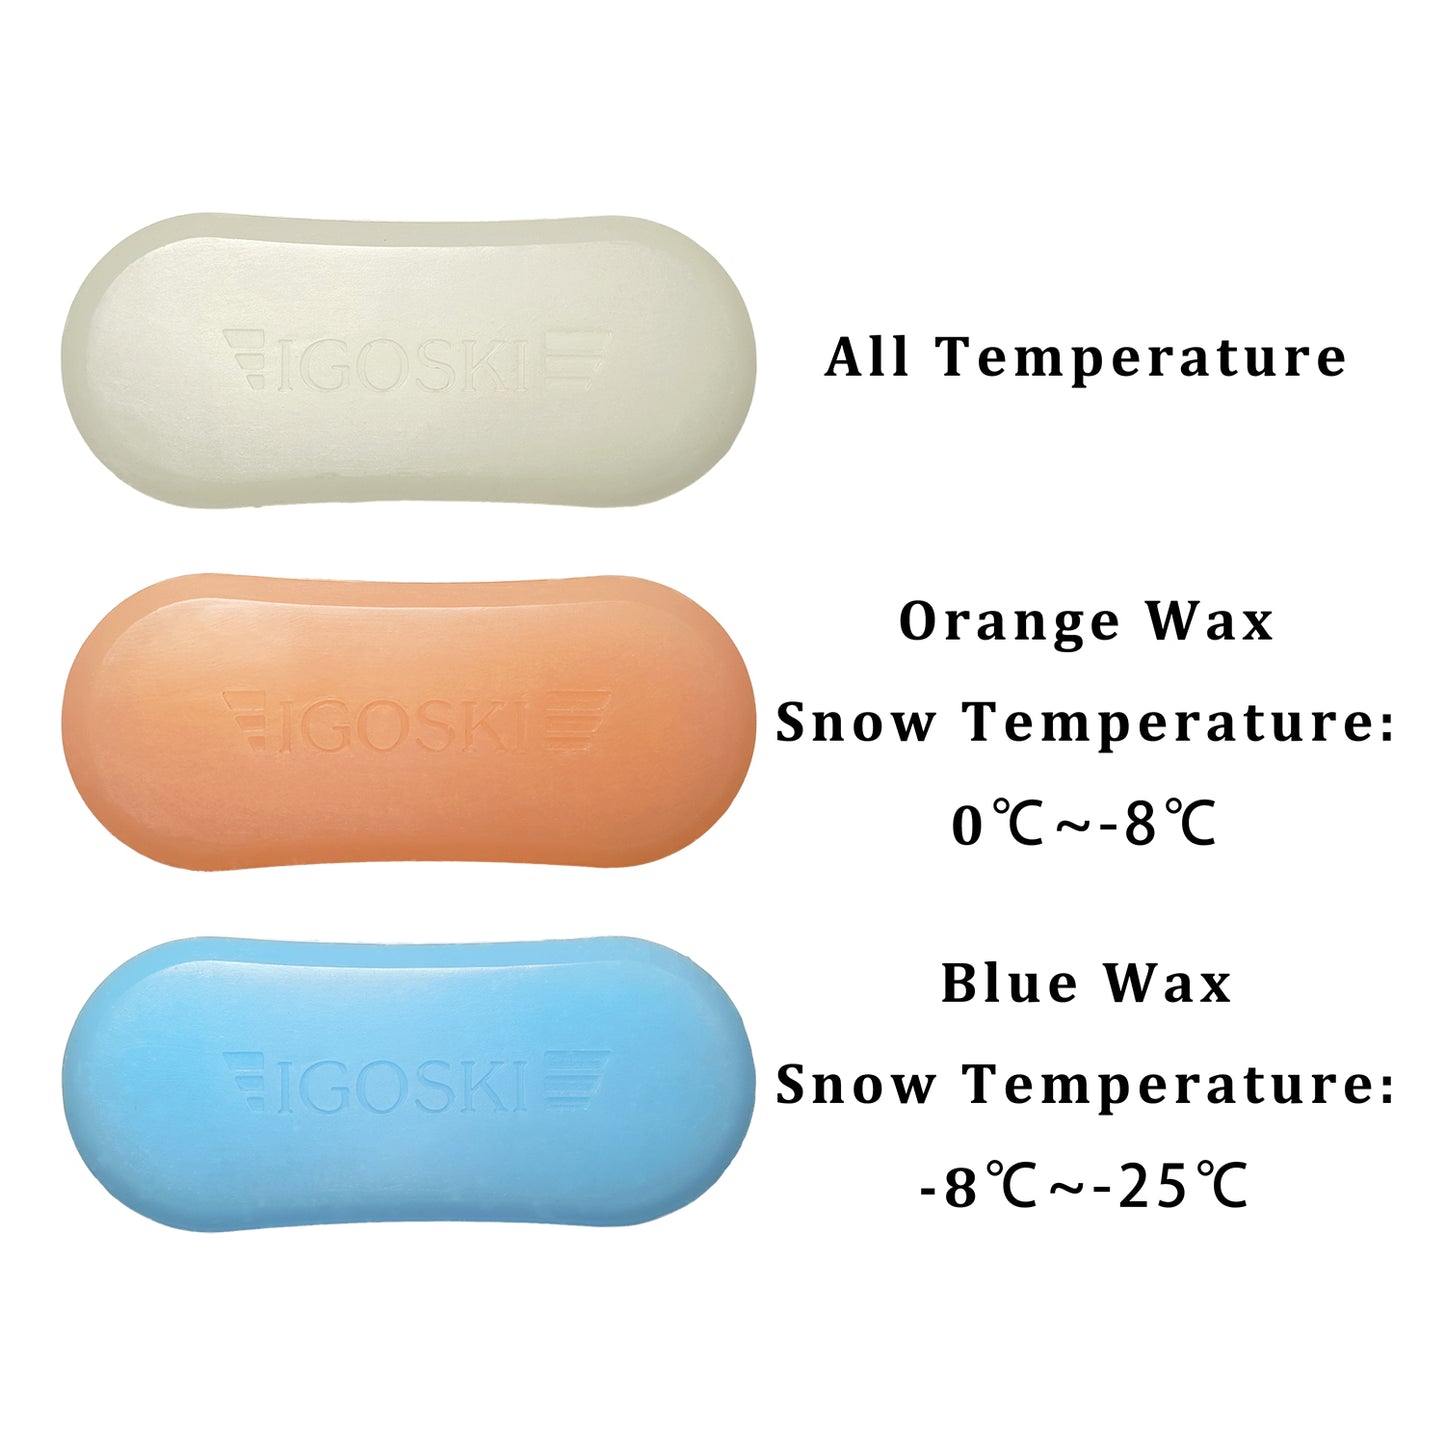 IGOSKI 3 упаковки воска для лыж и сноуборда, всетемпературный комплект Ultimate для лыж и сноуборда, всего 300 г